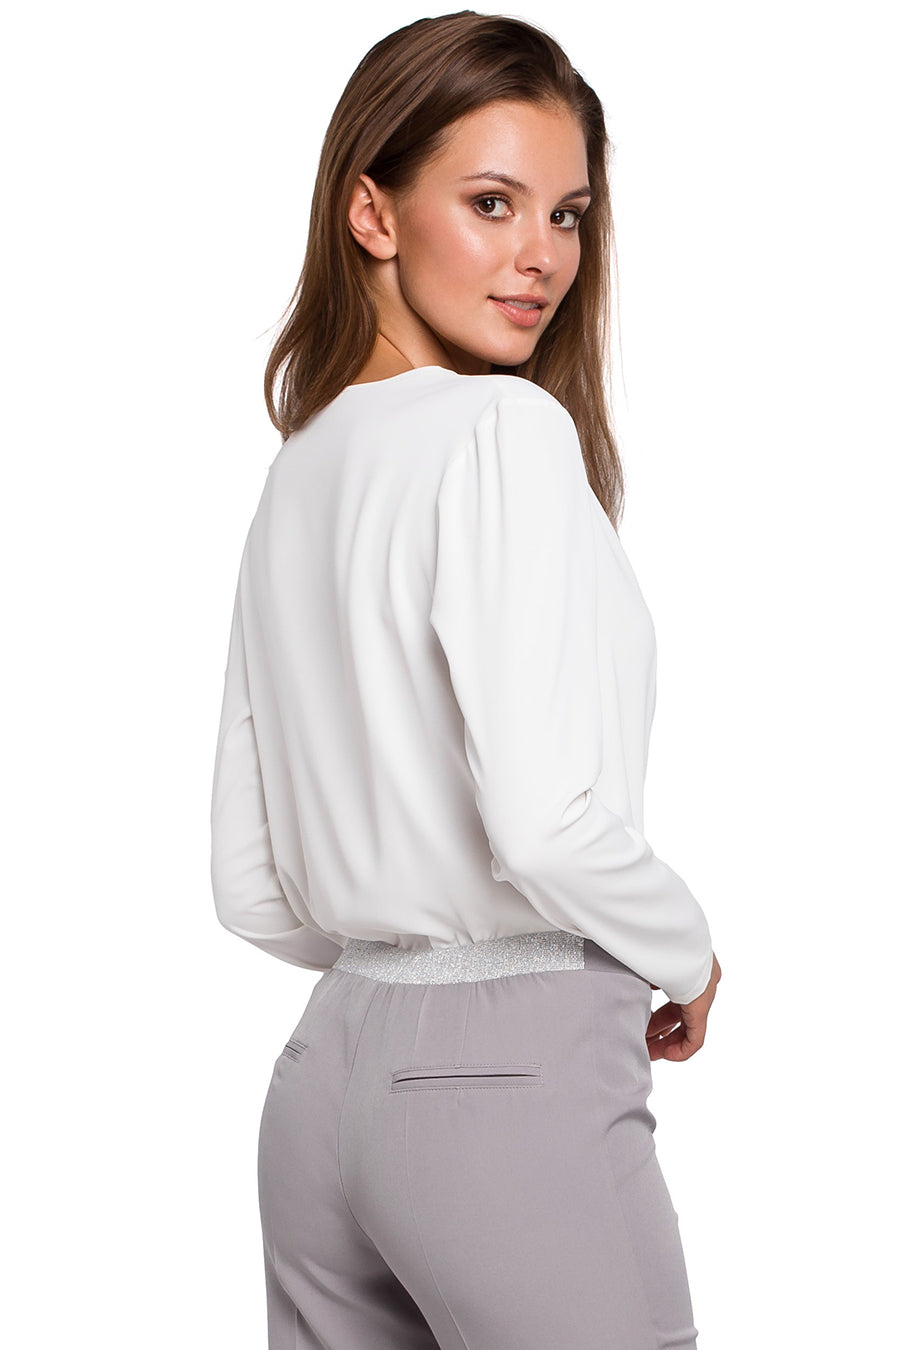 Γυναικεία μπλούζα Enide, Λευκό 4